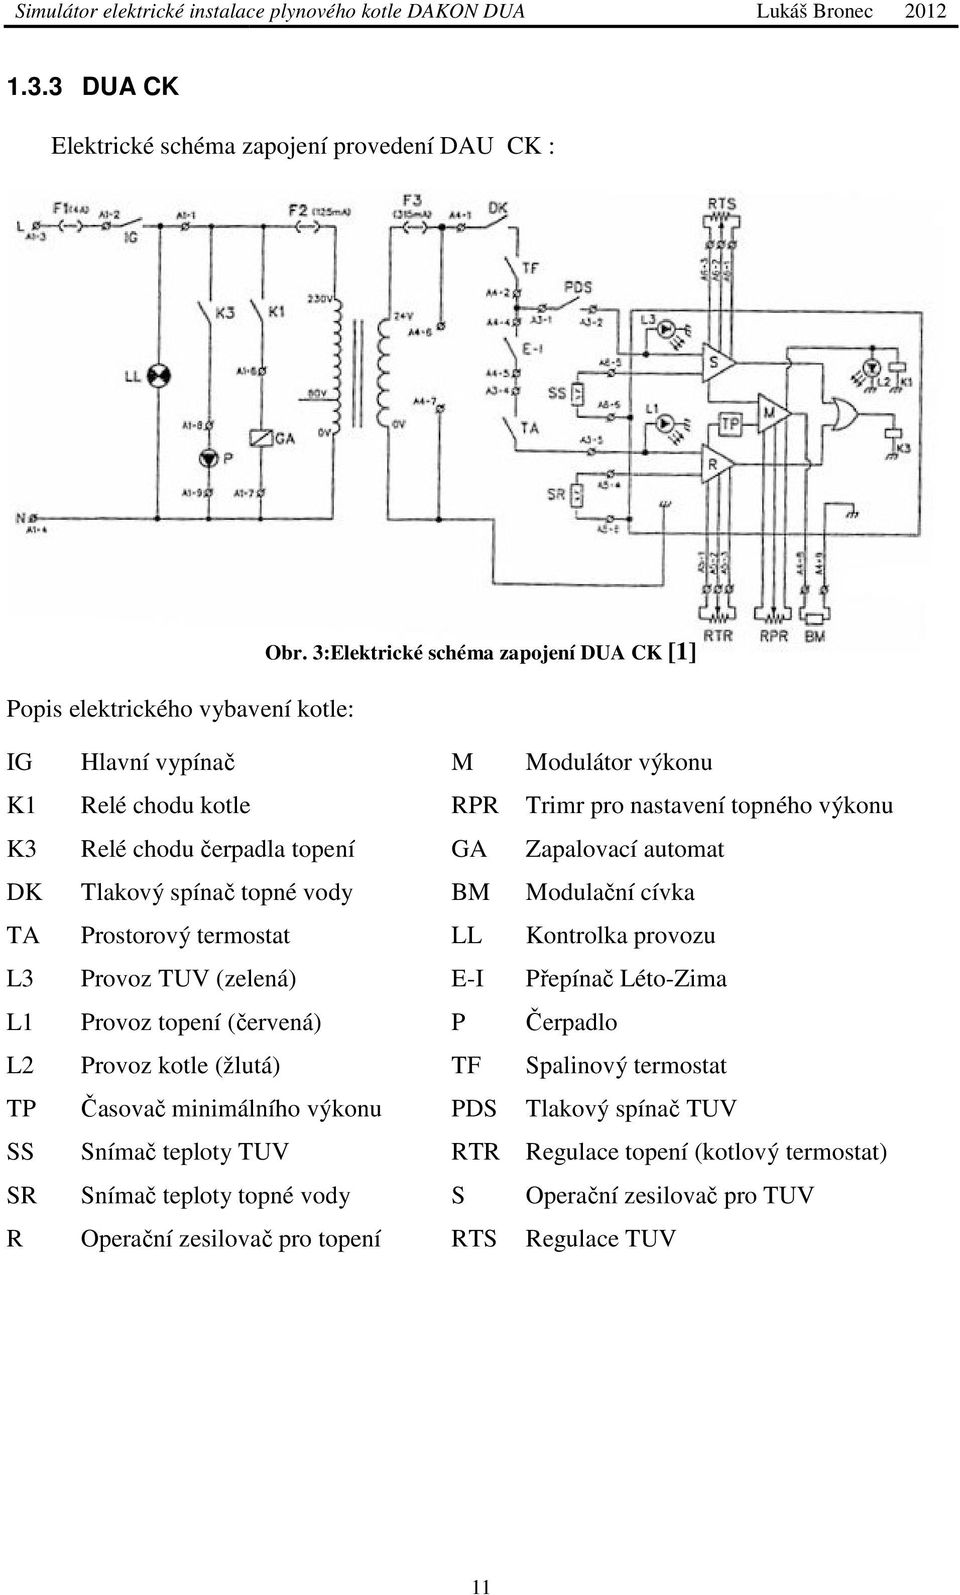 Zapalovací automat Tlakový spínač č topné vody BM Modulační cívka Prostorový termostat LL Kontrolka provozu Provoz TUV (zelená) E-I Přepínač Léto-Zima Provoz topení (červená) P Čerpadlo Provoz kotle